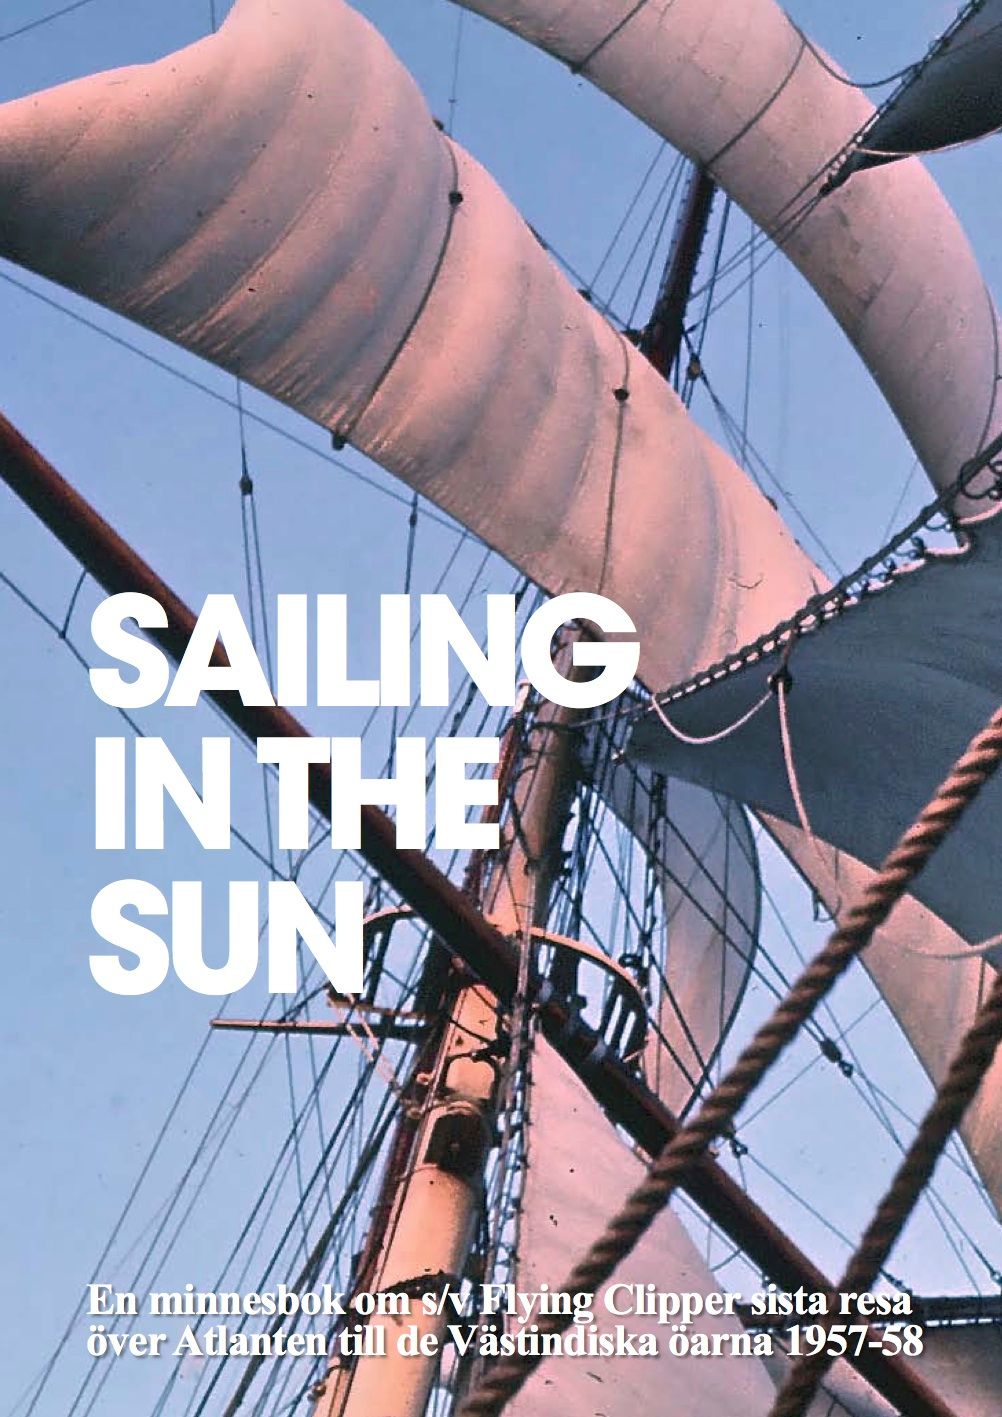 Sailing in the Sun, e-bog af Lars Dahllöf, Lasse Genberg